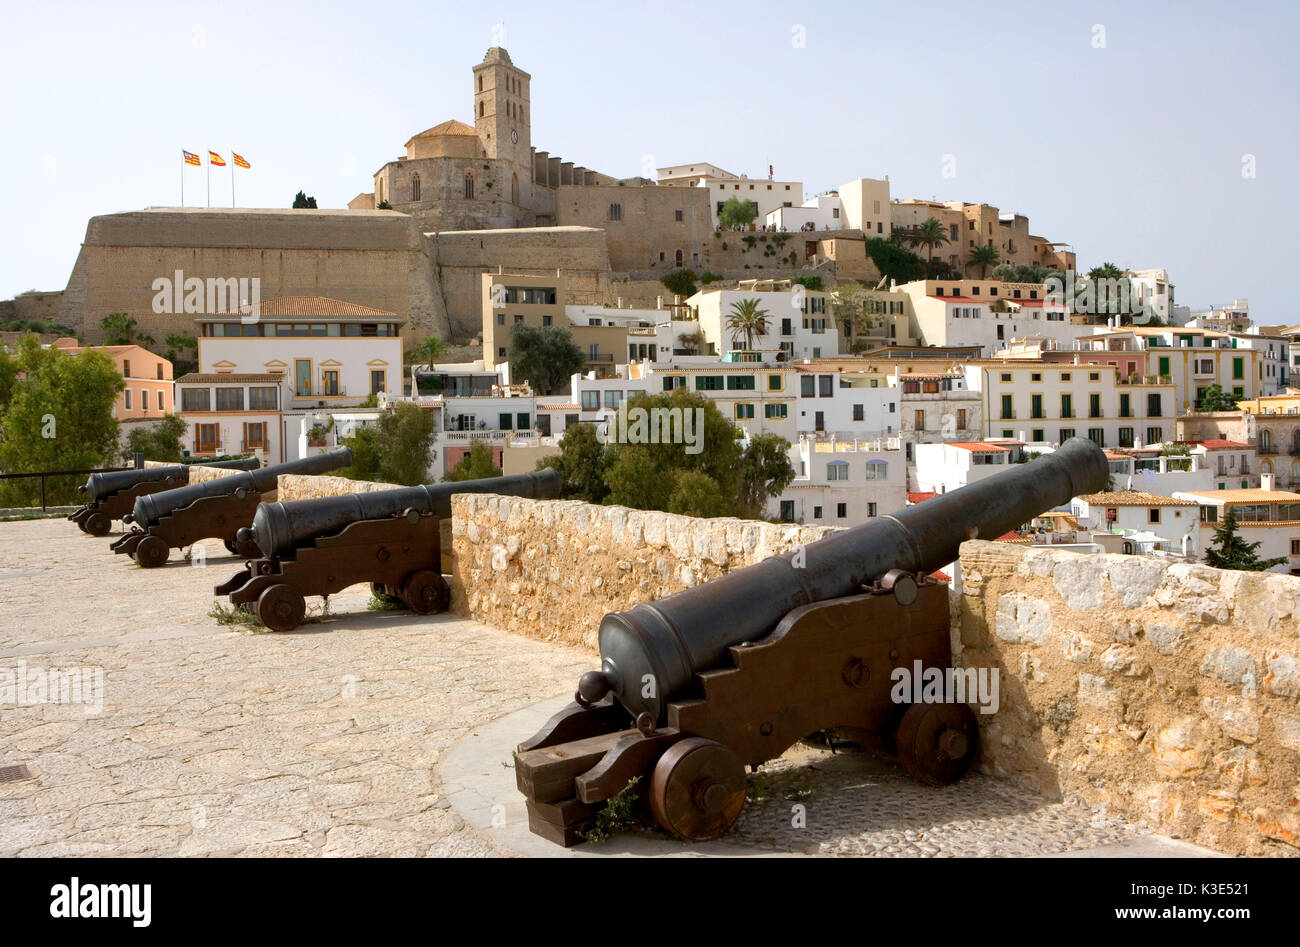 Eivissa - Hauptstadt von Ibiza - Blick auf die Altstadt Dalt Vila - Kathedrale Santa Maria de las Nieves - alte Kanonen Stock Photo